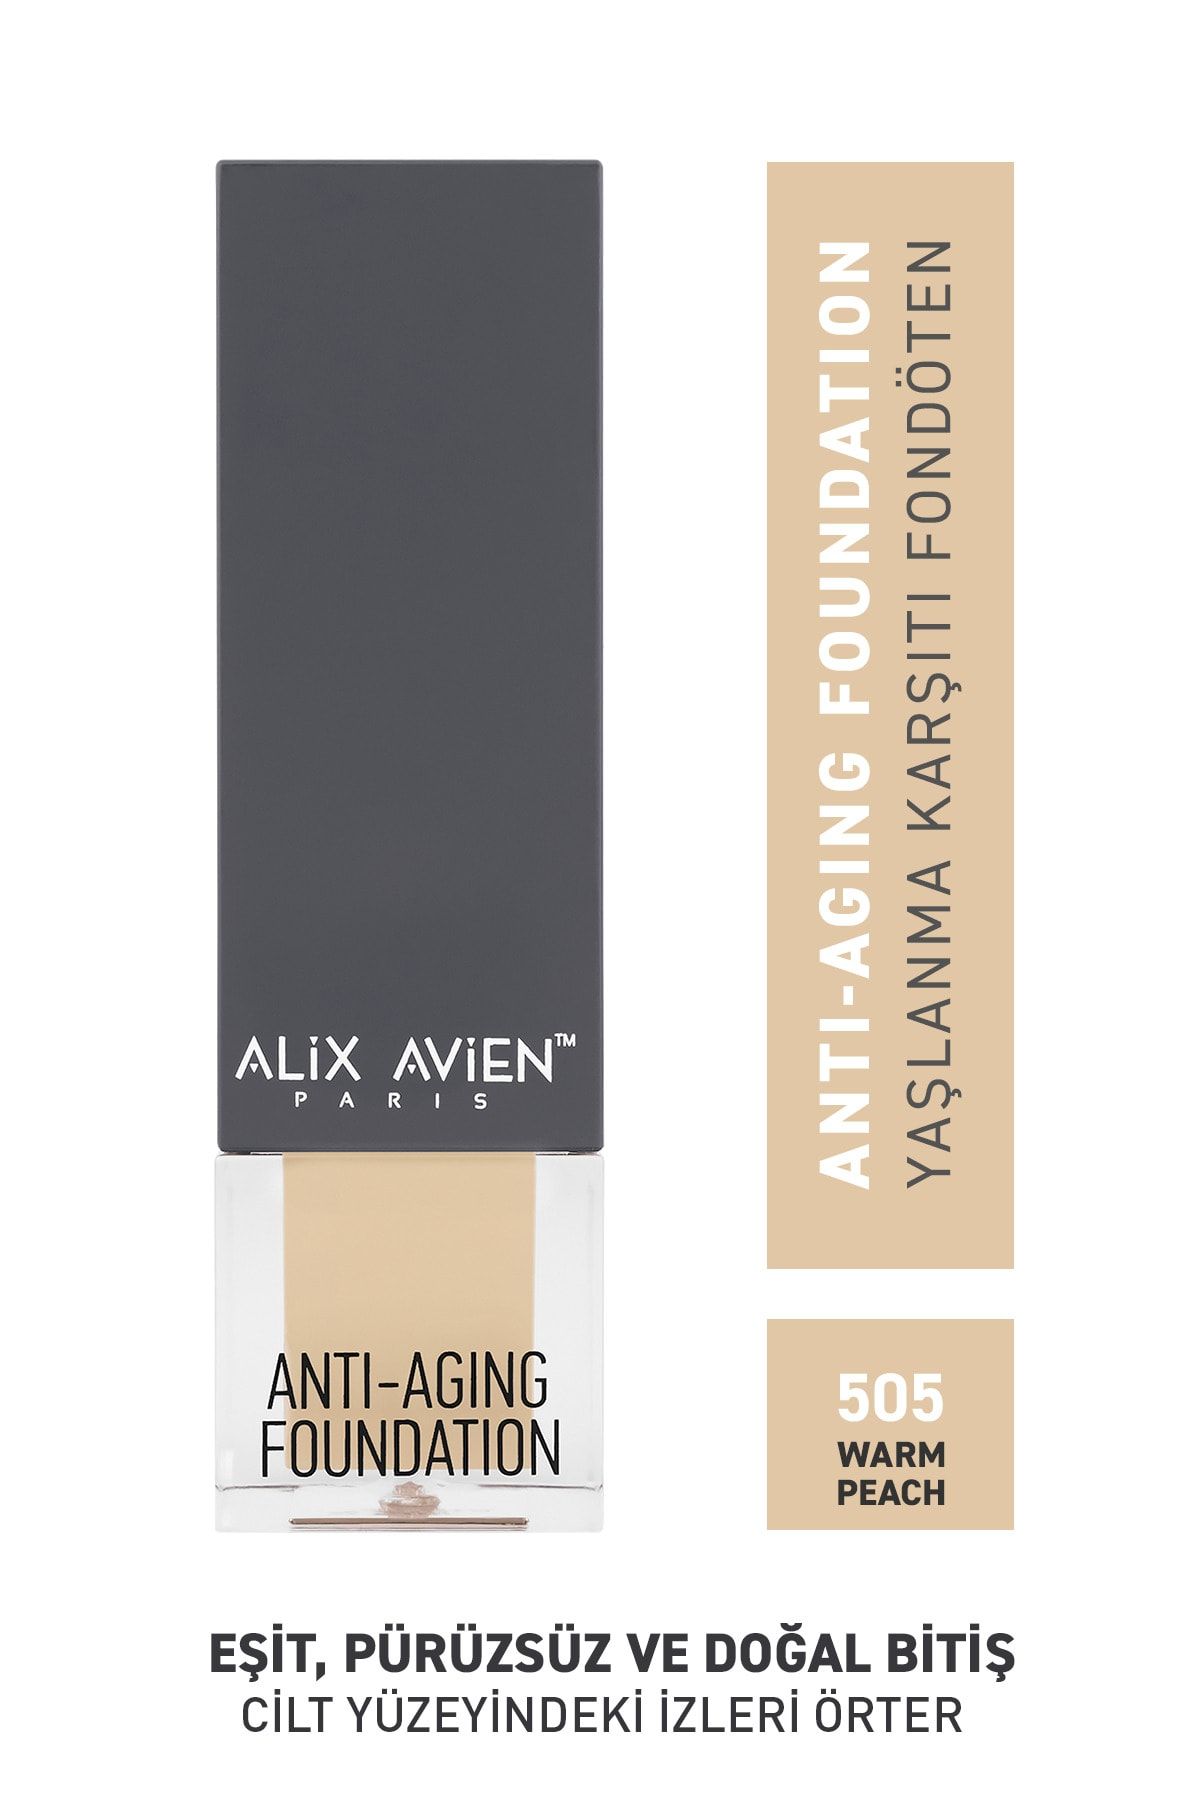 Alix Avien Yaşlanma Karşıtı Fondöten 505 Warm Peach Spf 15 Anti Aging Foundation - 35 ml